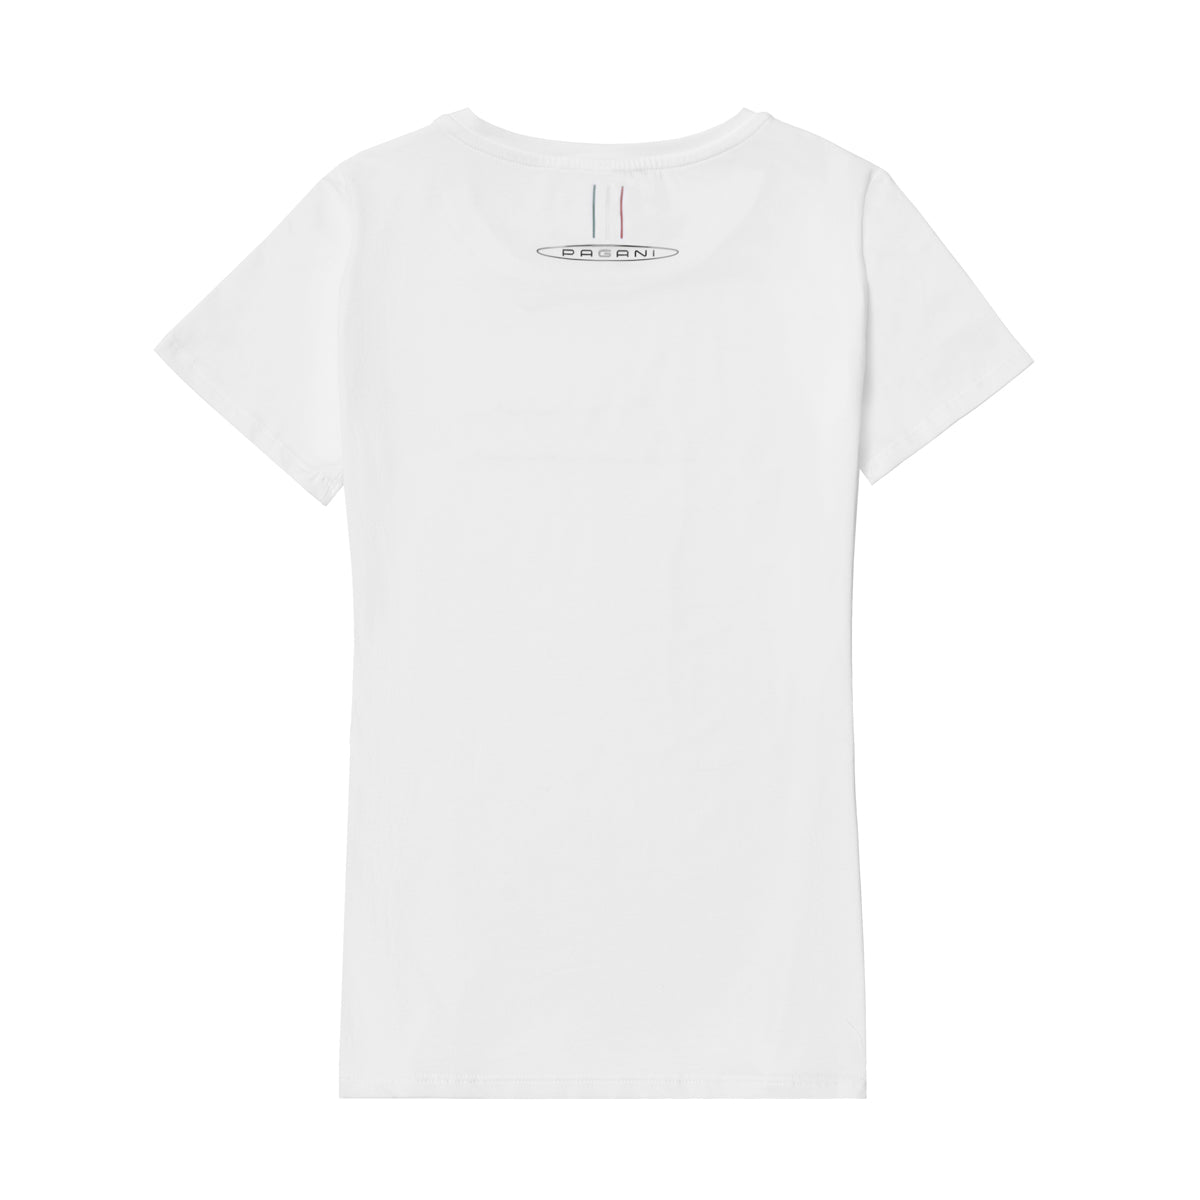 Camiseta para mujer blanca con purpurina | Team Collection